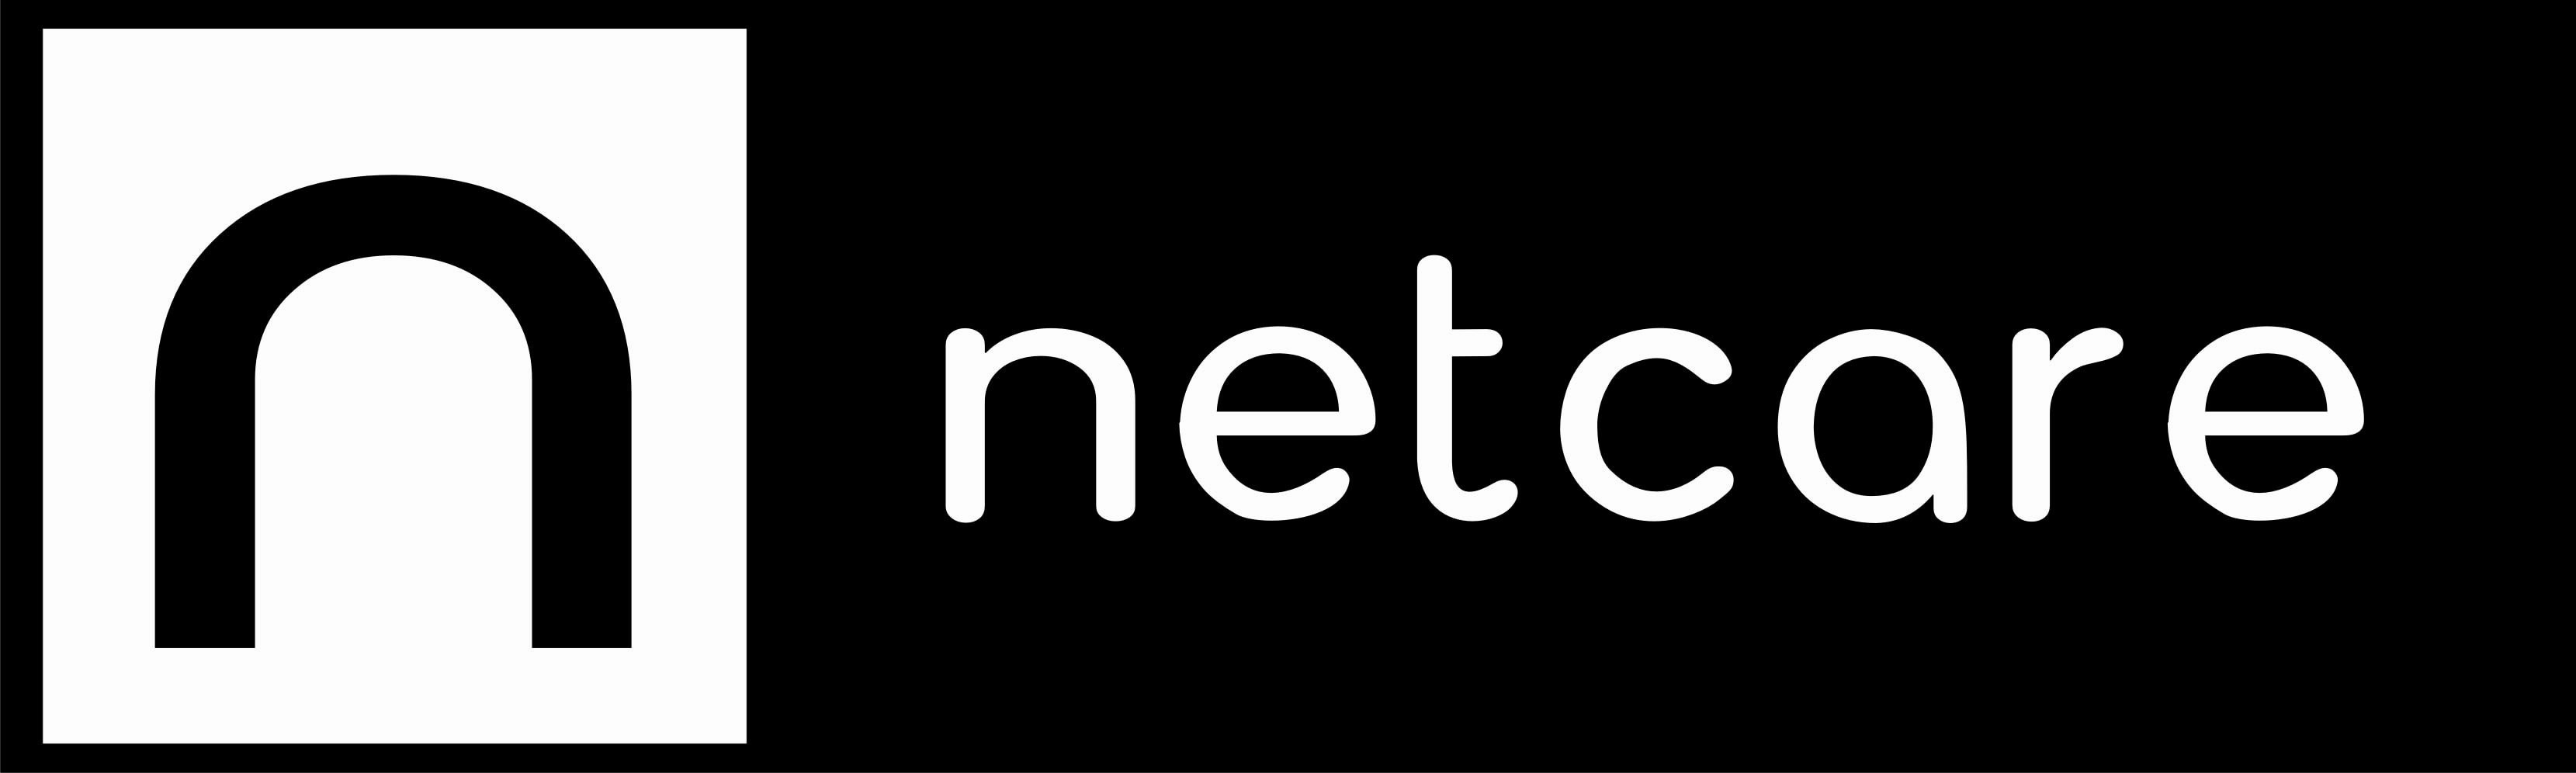 Netcare_Logo